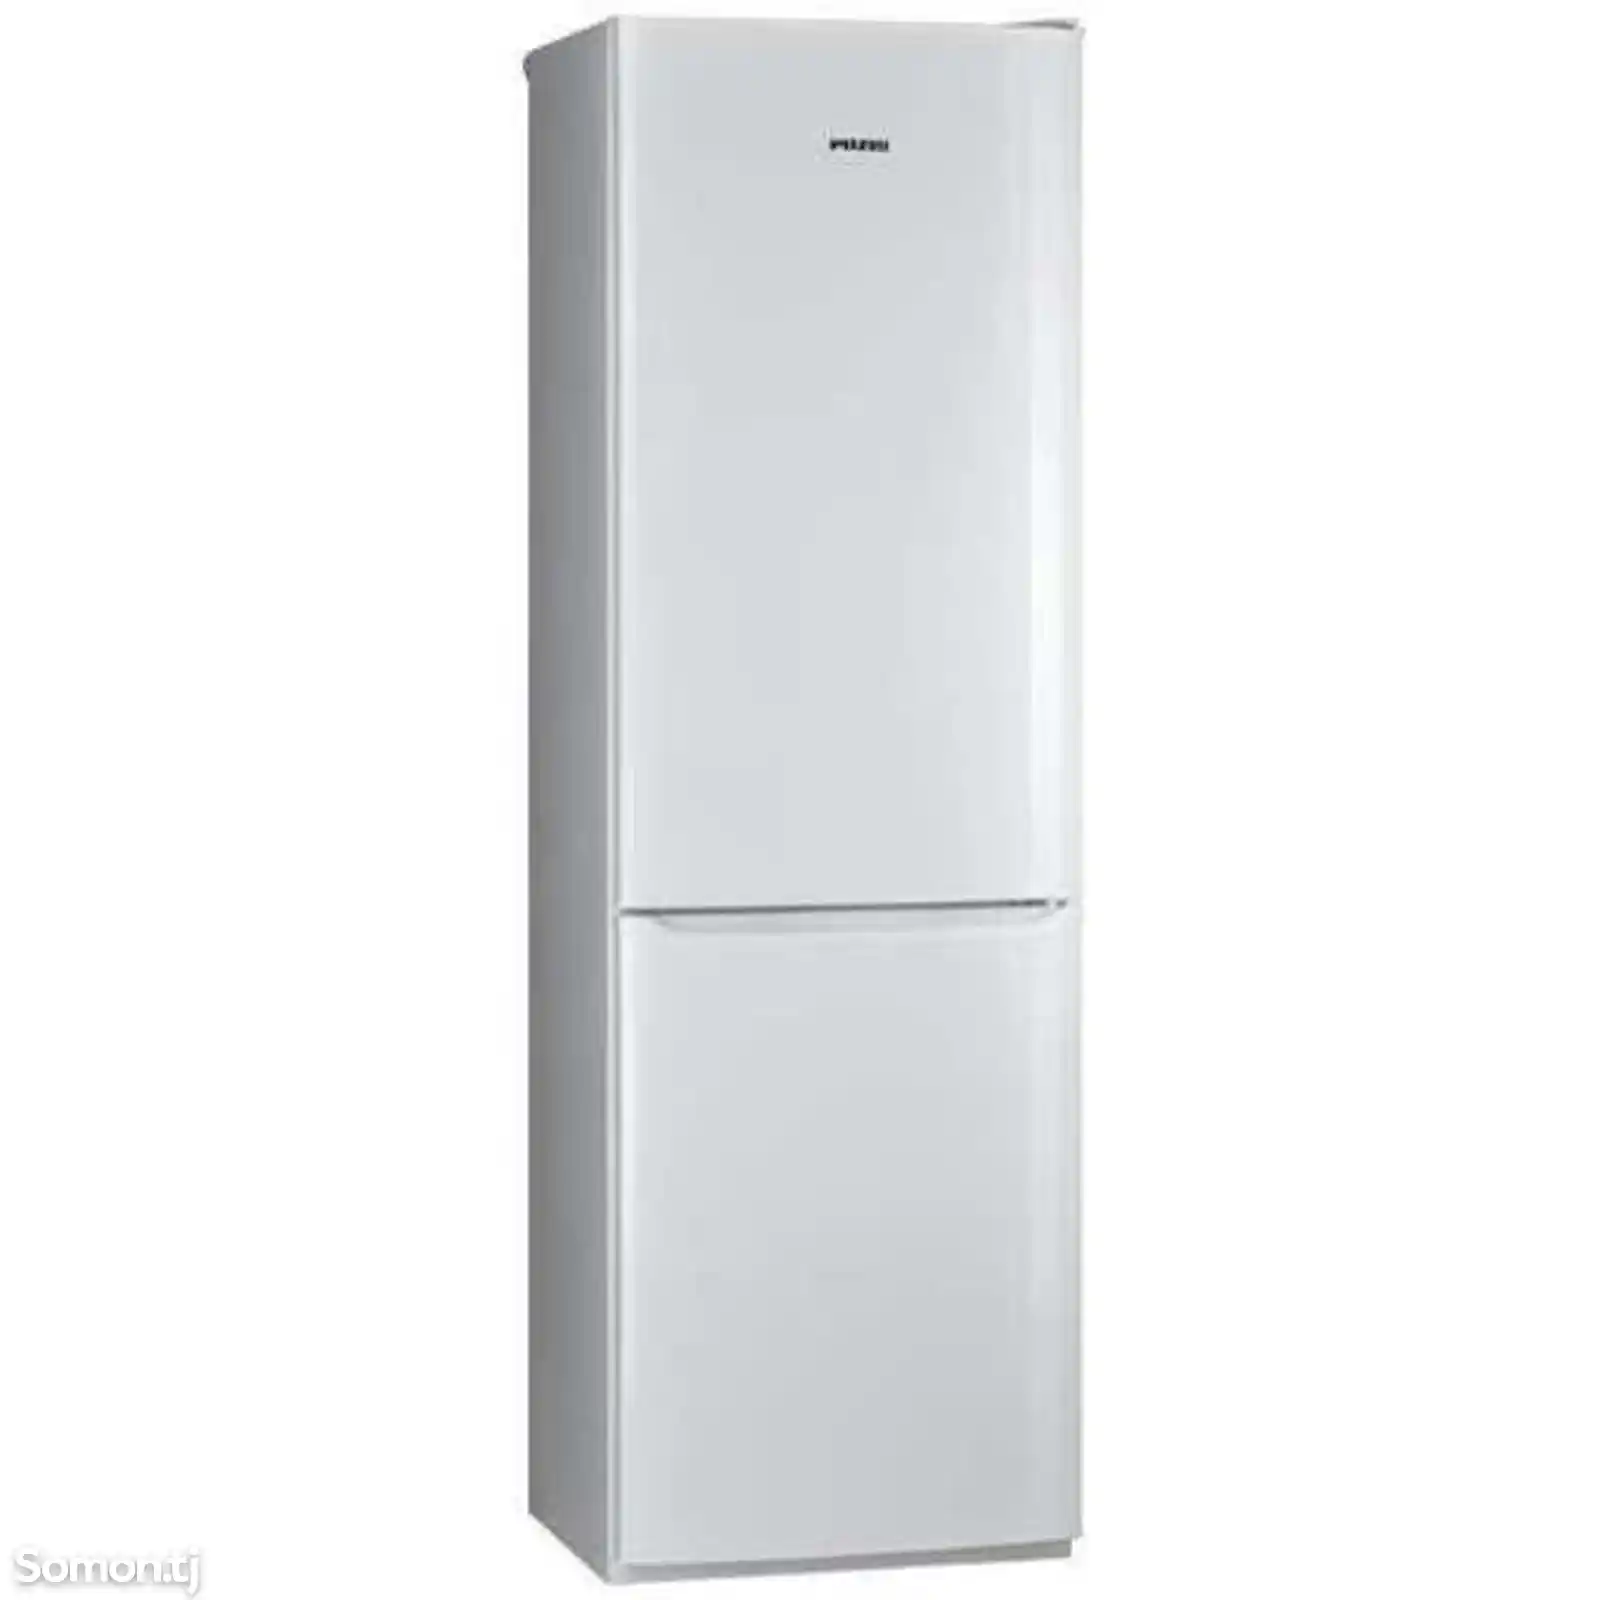 Холодильник позис-4